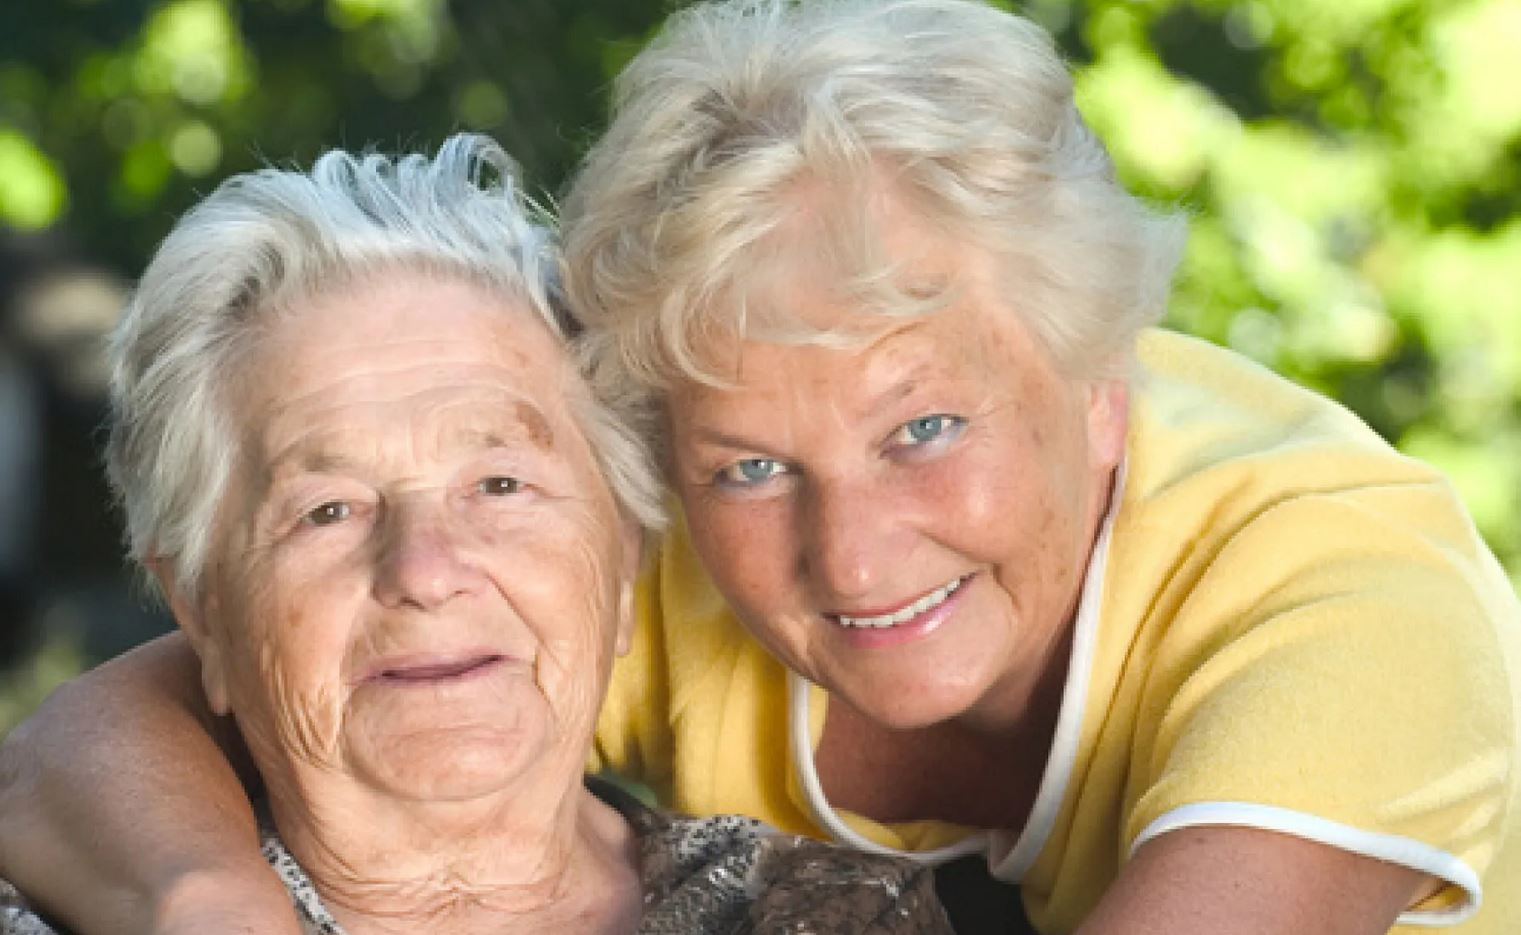 Deux personnes âgées souriante qui regarde l'objectif